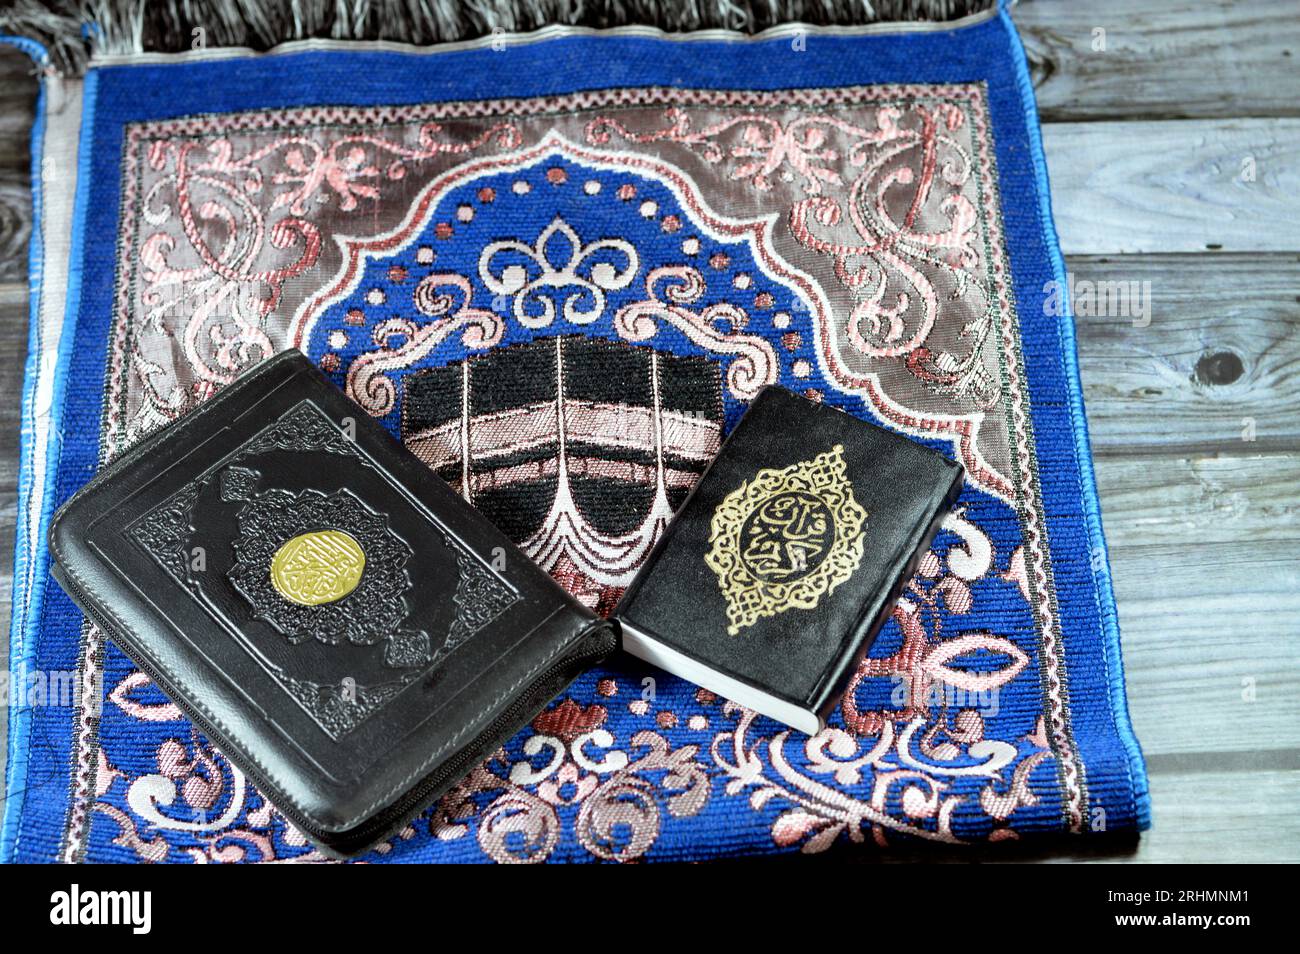 Un tapis de prière et le Noble Coran, tapis de prière est un morceau de tissu, parfois un tapis à poils, utilisé par les musulmans pour les 5 prières quotidiennes, également appelé Janam Banque D'Images